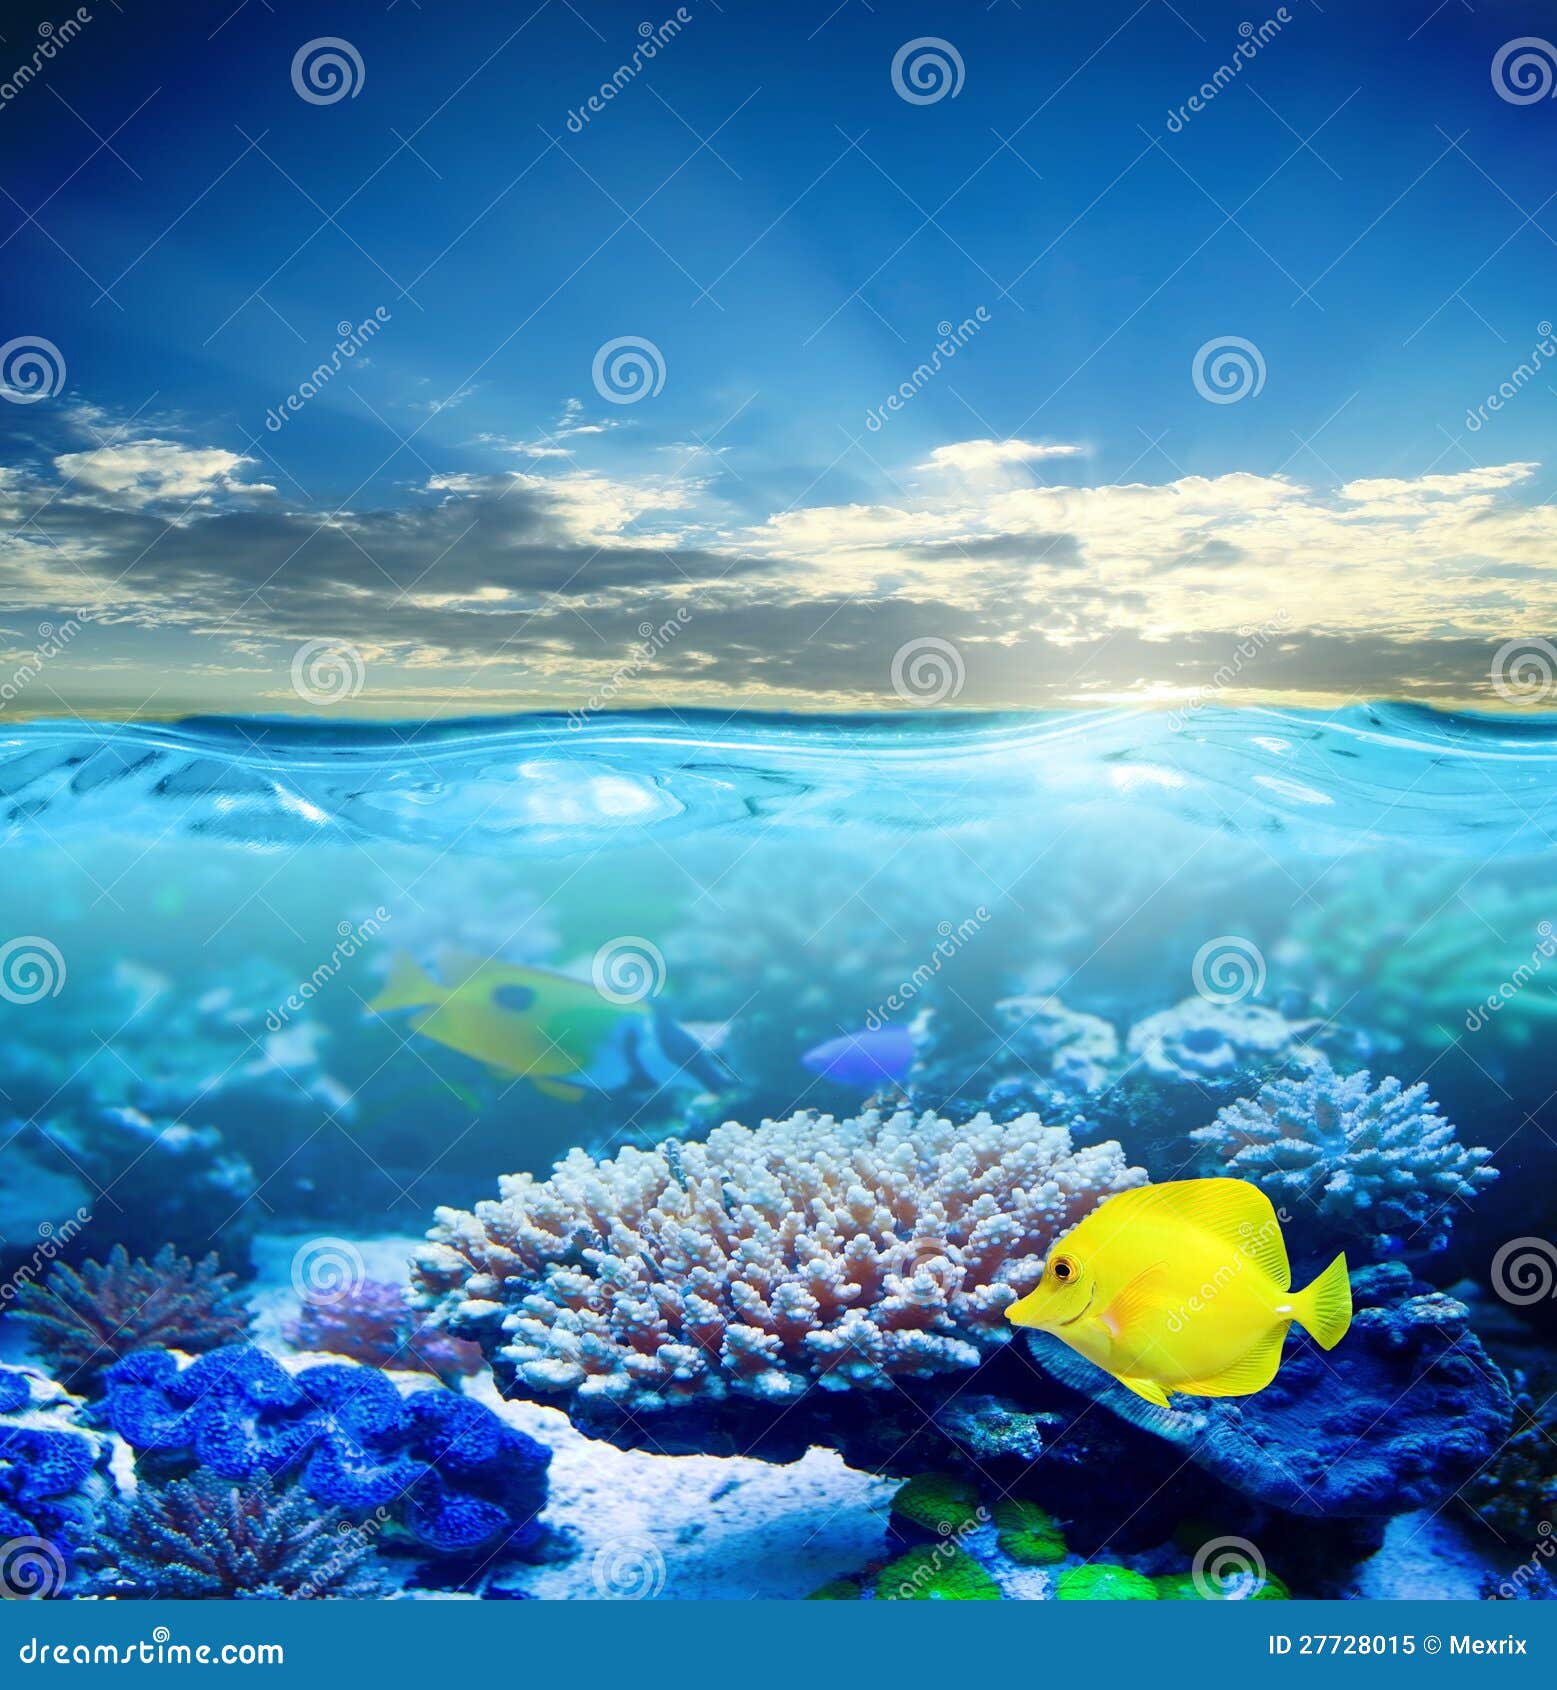 Under water life stock image. Image of aquarium, blue - 27728015